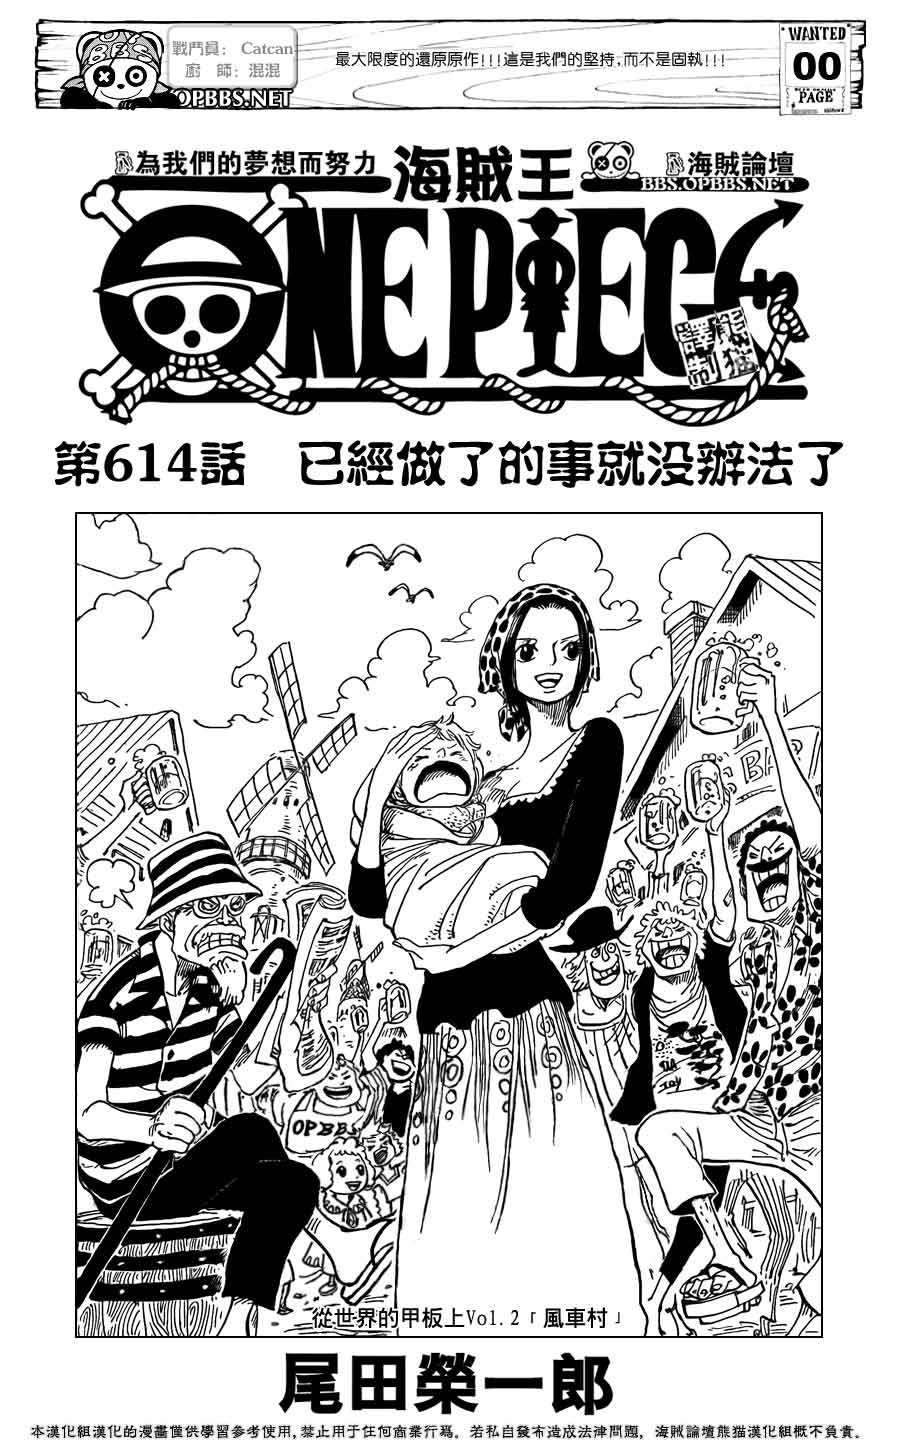 海贼王扉页漫画 在世界的甲板上 第2画 淘米海贼王中文网